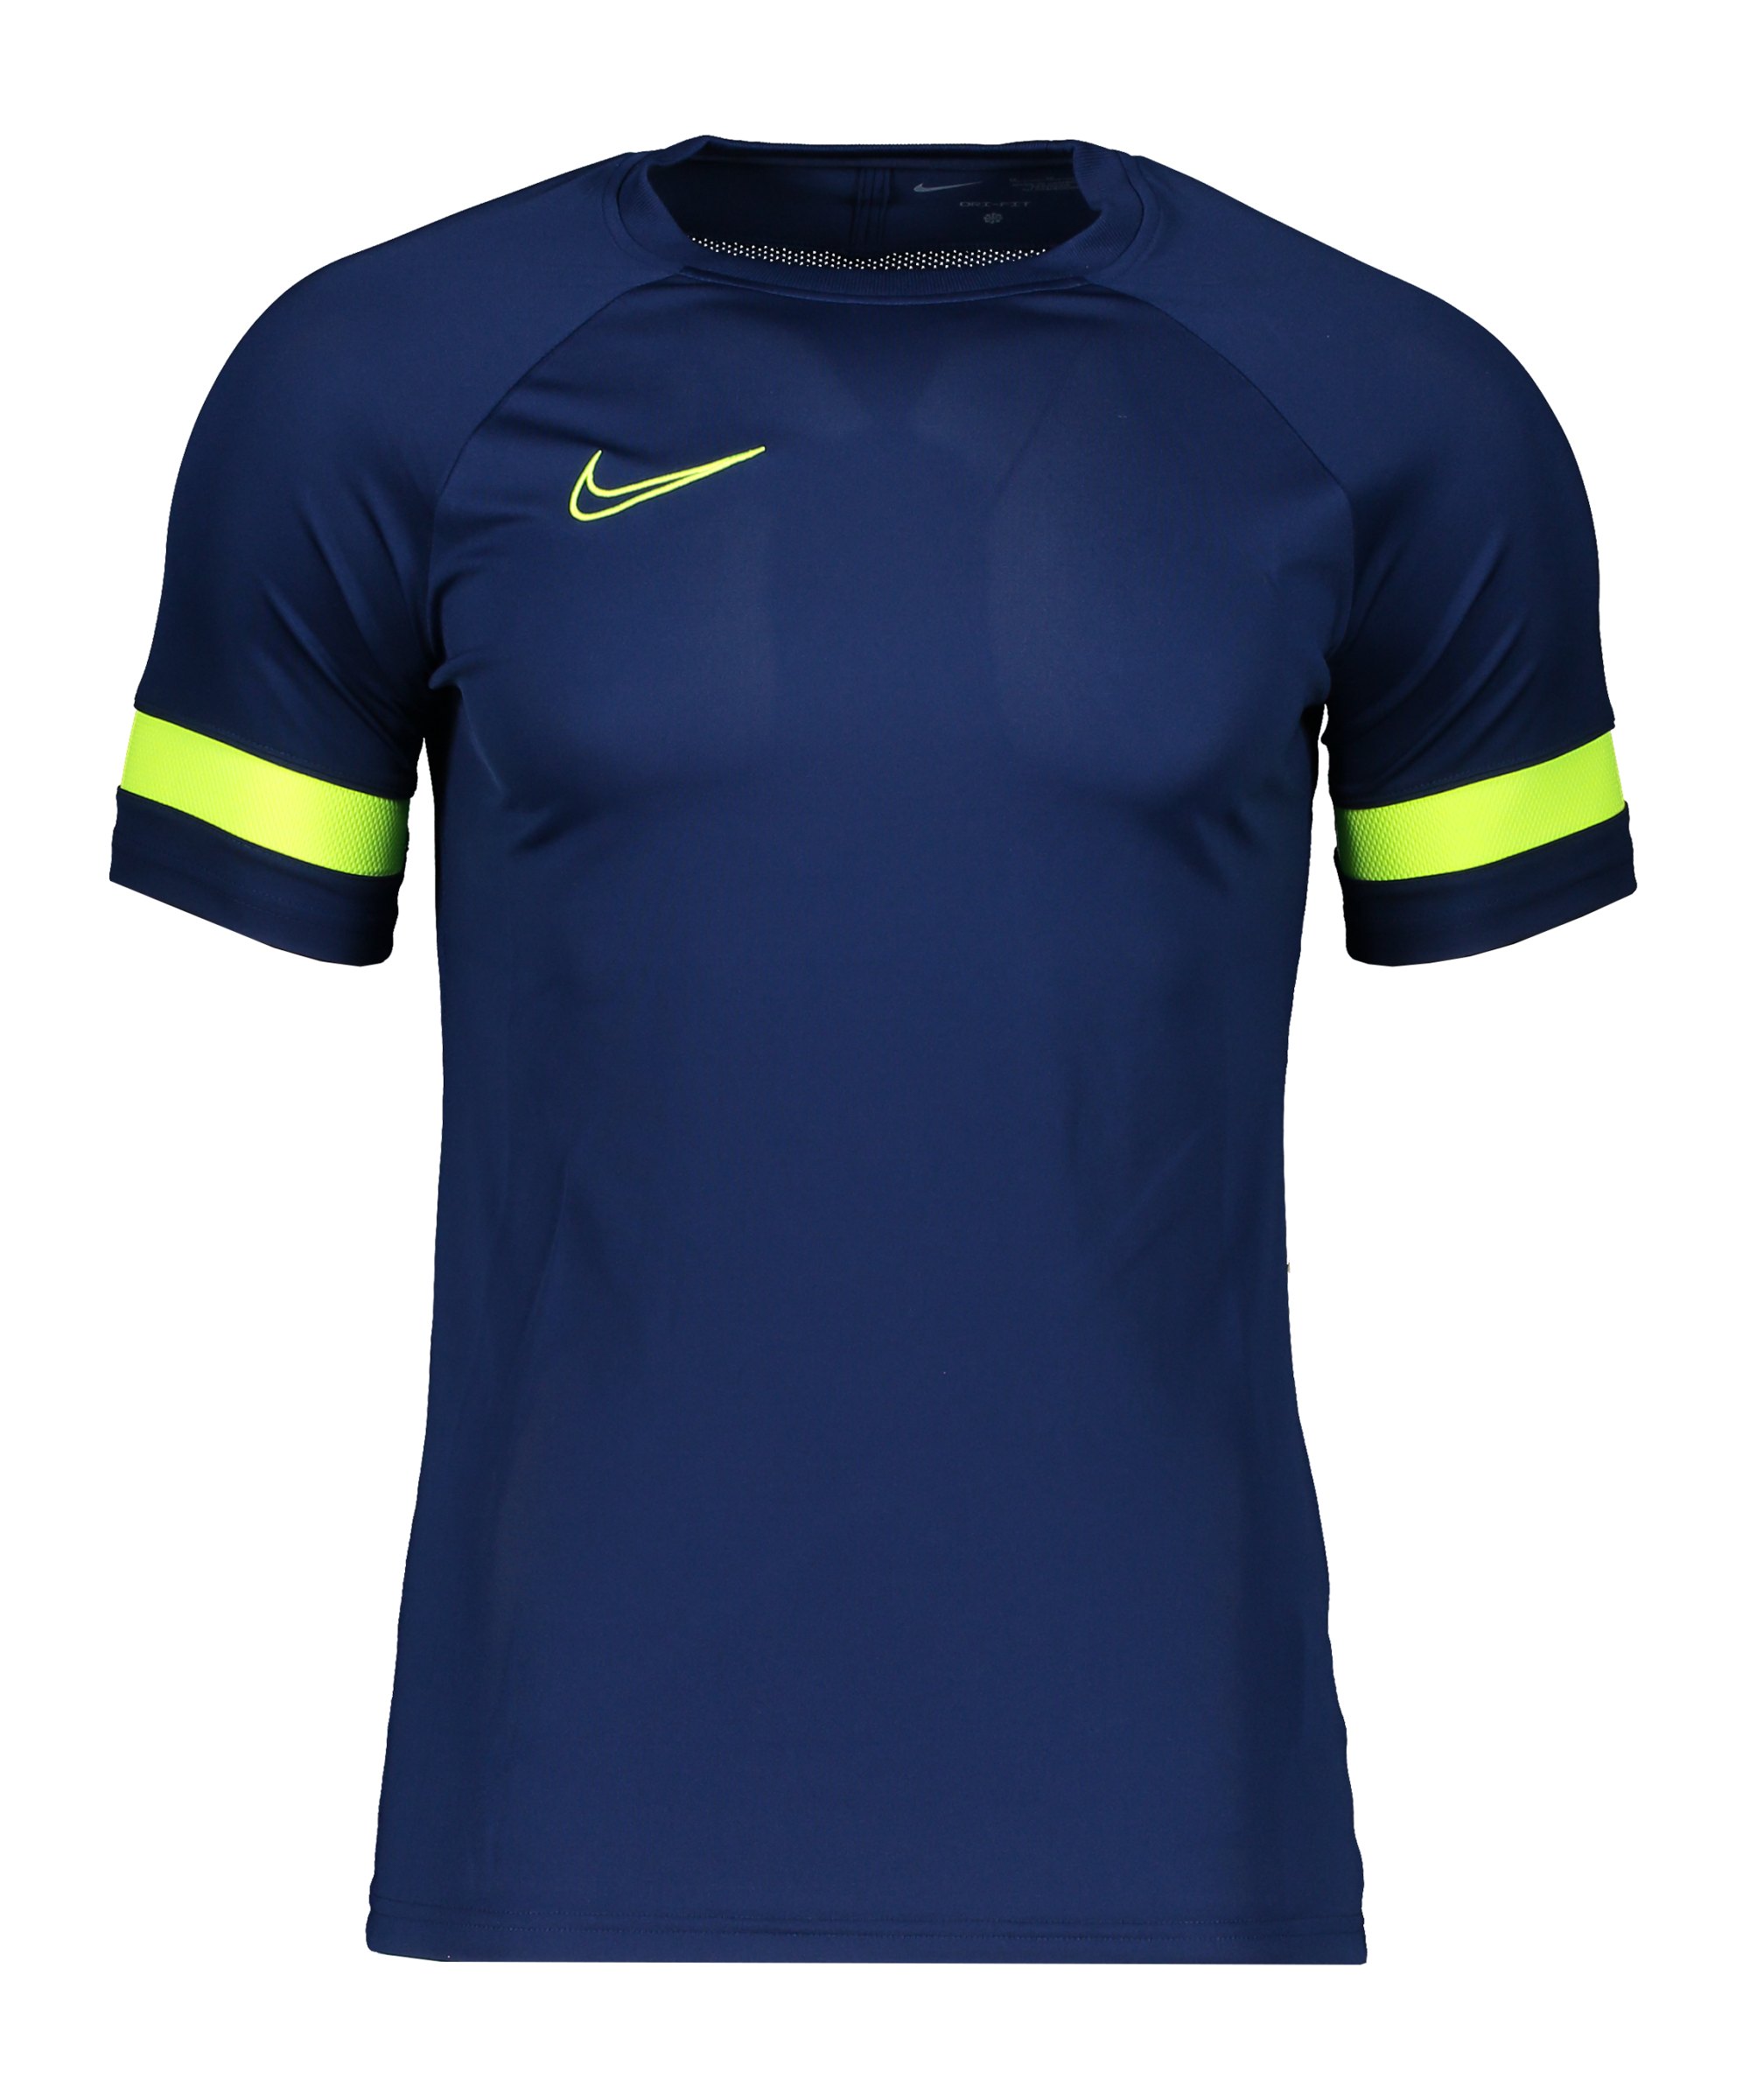 Nike Academy 21 T-Shirt Blau Gelb F492 - blau